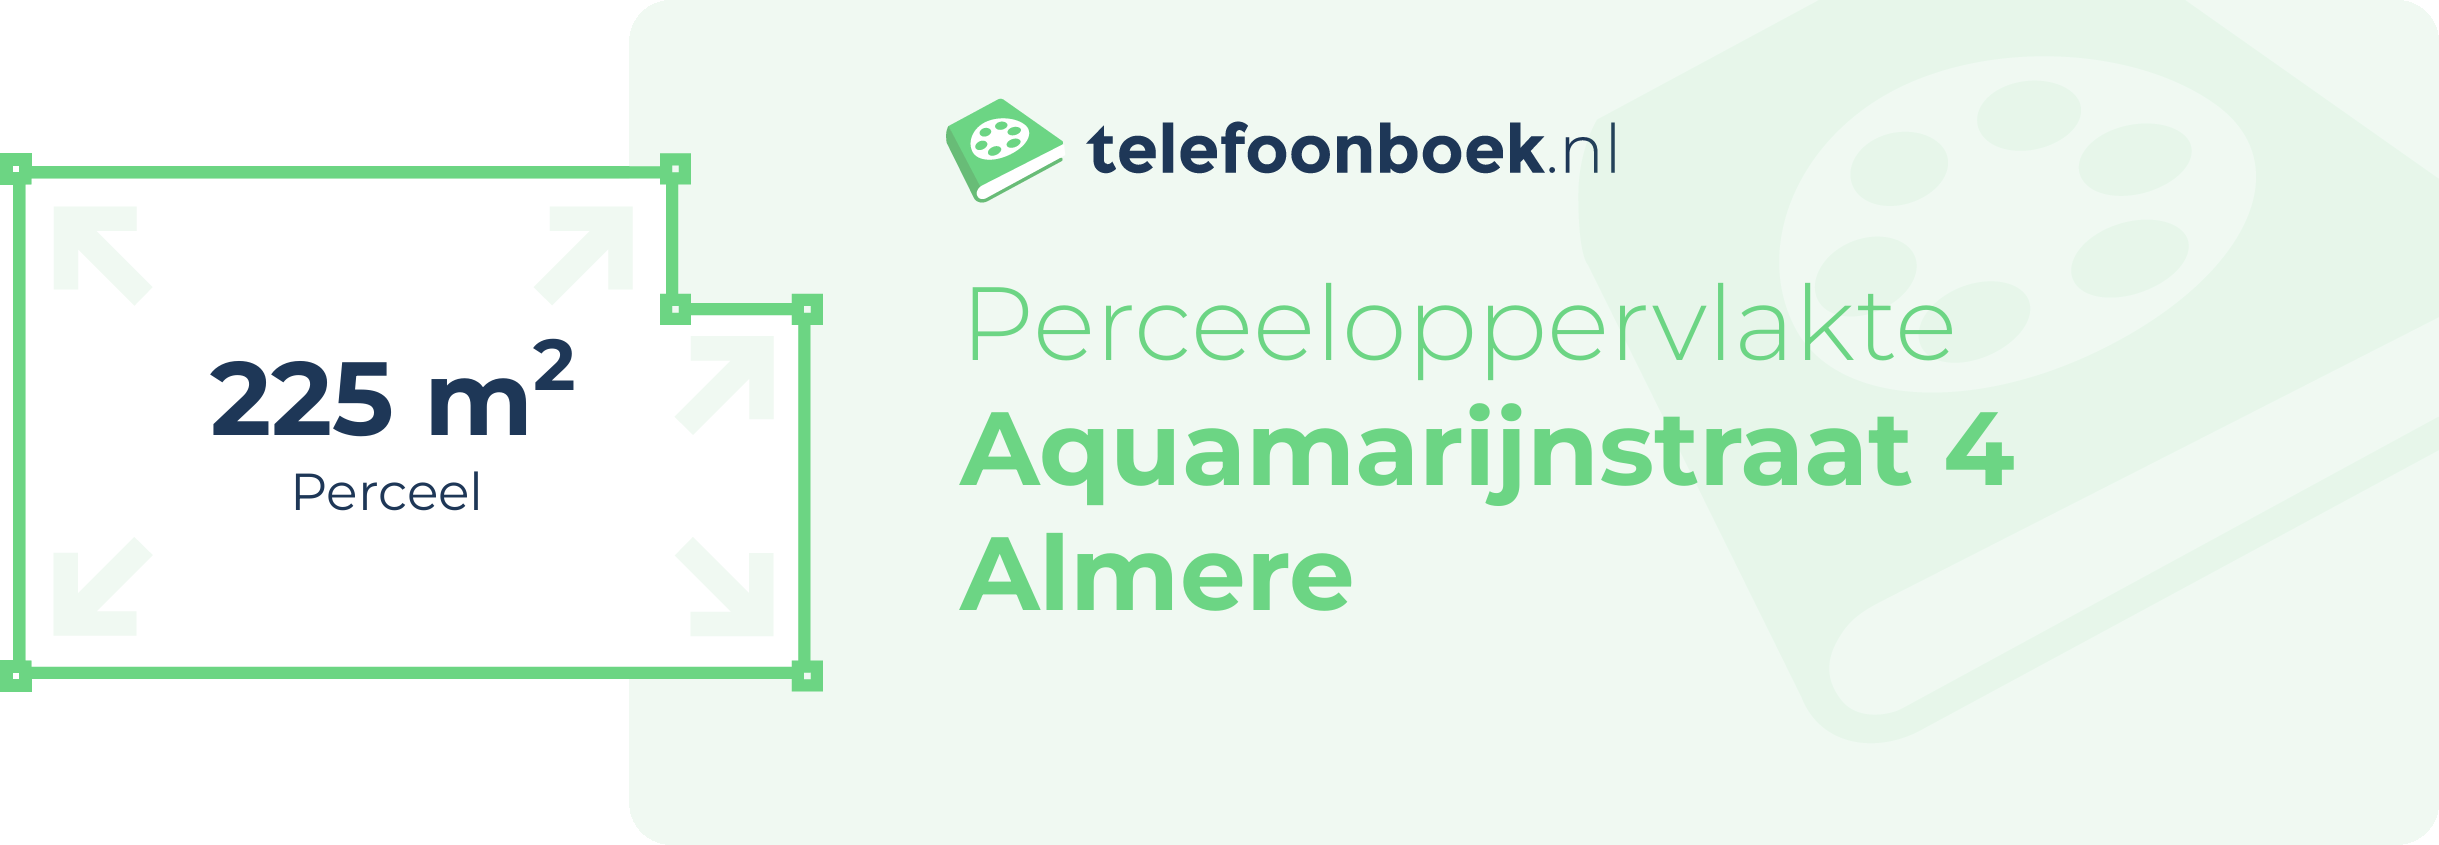 Perceeloppervlakte Aquamarijnstraat 4 Almere